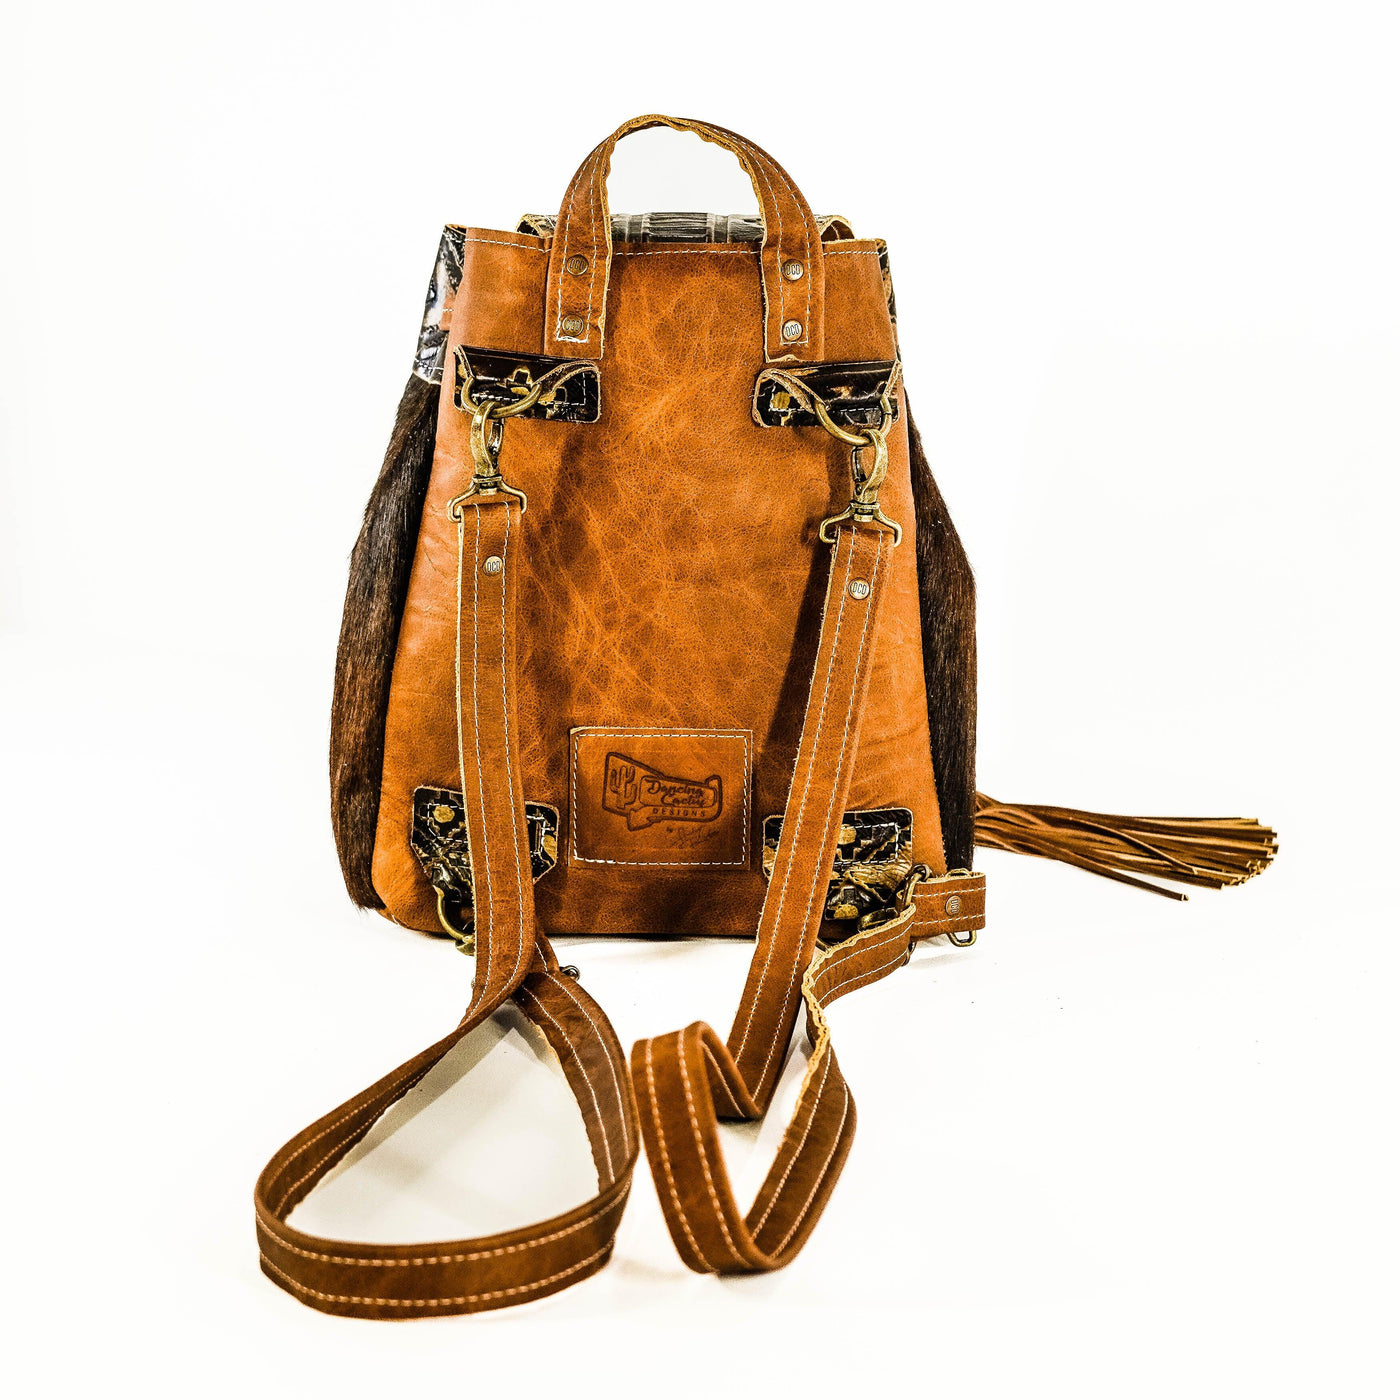 Mini Kelsea Backpack - Dark Brindle w/ Cowboy Navajo-Mini Kelsea Backpack-Western-Cowhide-Bags-Handmade-Products-Gifts-Dancing Cactus Designs